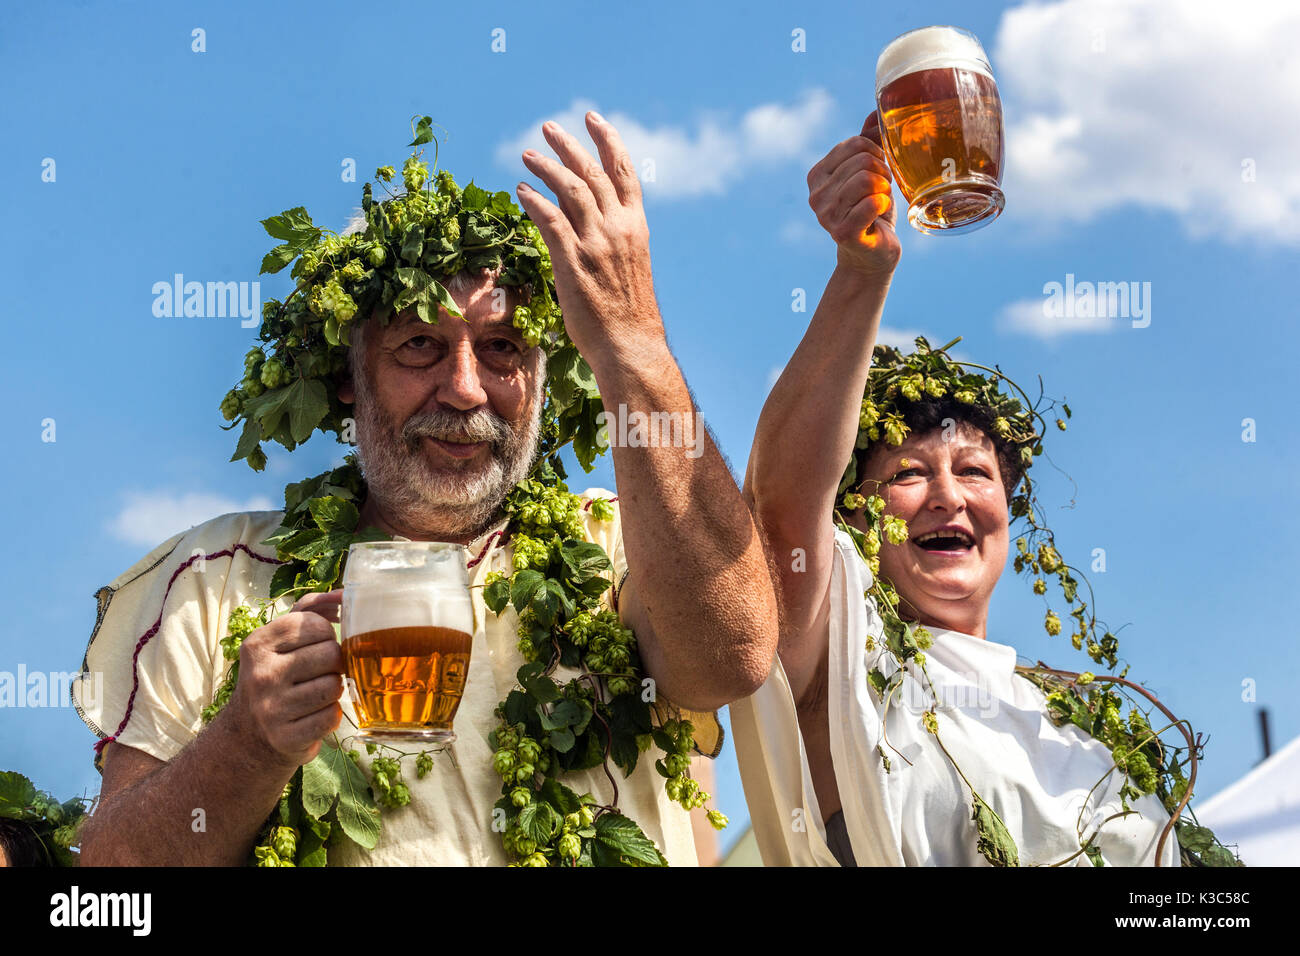 Tschechische Bierfestival Mann Frau Senioren genießt Sommer Menschen feiern dekorierten Hopfenkranz Cheers Rising Hands mit einem Glas Bier Tschechische Republik Stockfoto